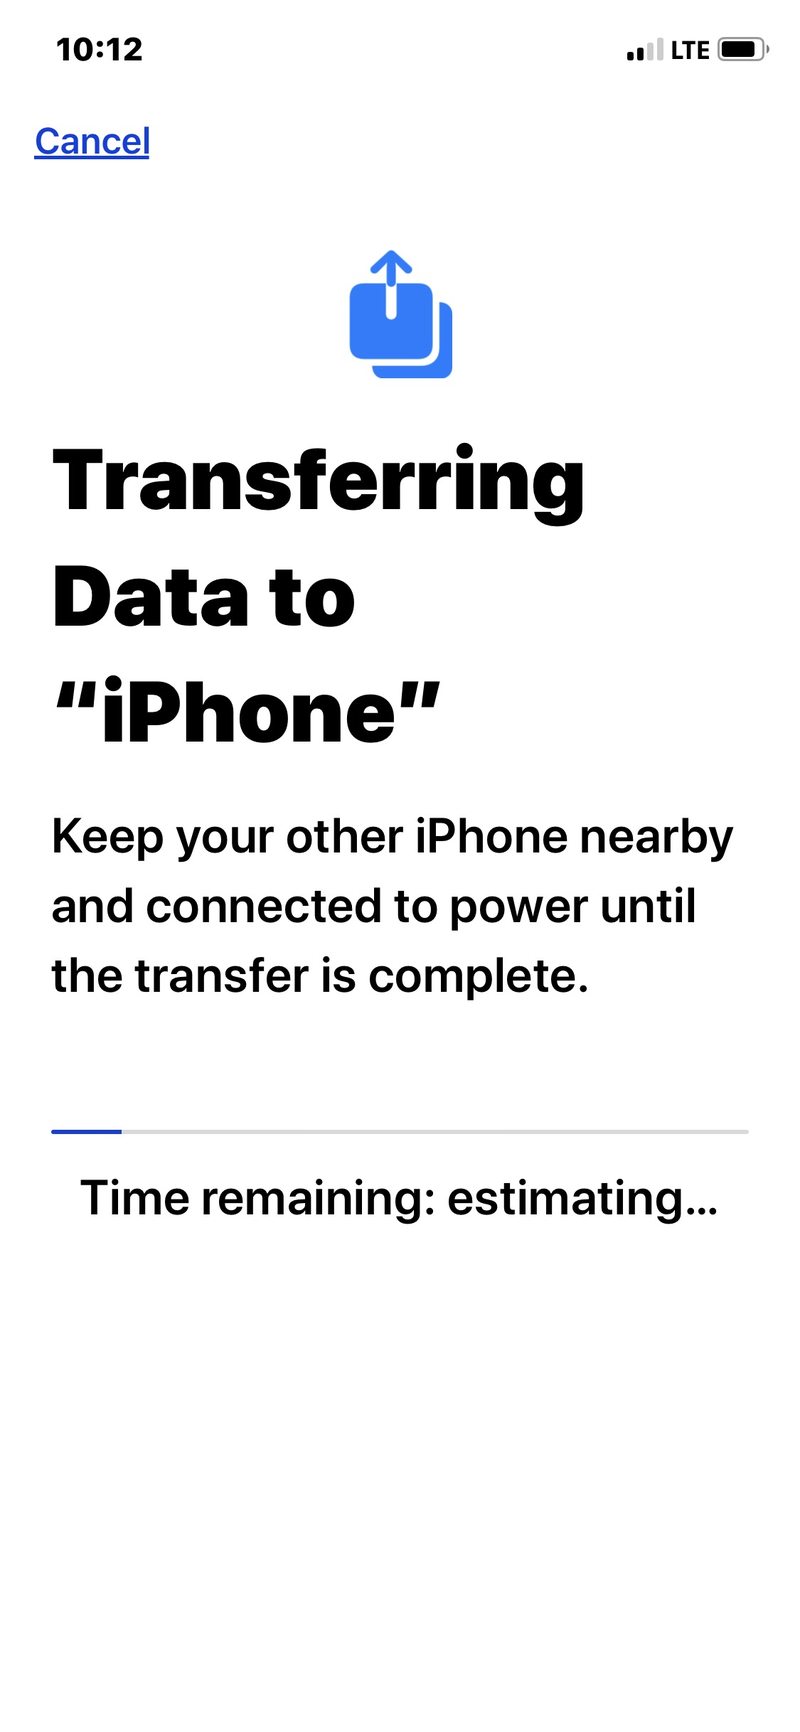 正在将所有数据从旧 iPhone 传输到新 iPhone手机” />   <!--</ol-->
<p>迁移完成后，新的 iPhone 13、iPhone 13 Pro、iPhone 13 Mini 或 iPhone 13 Pro Max 将可以使用旧 iPhone 上复制的所有内容，包括所有数据、照片、音乐、定制等。</p>
<p>这可能需要一段时间，所以请耐心等待。</p>
<p>根据新的 iPhone 型号和您的支付方式，您可能需要<a href=